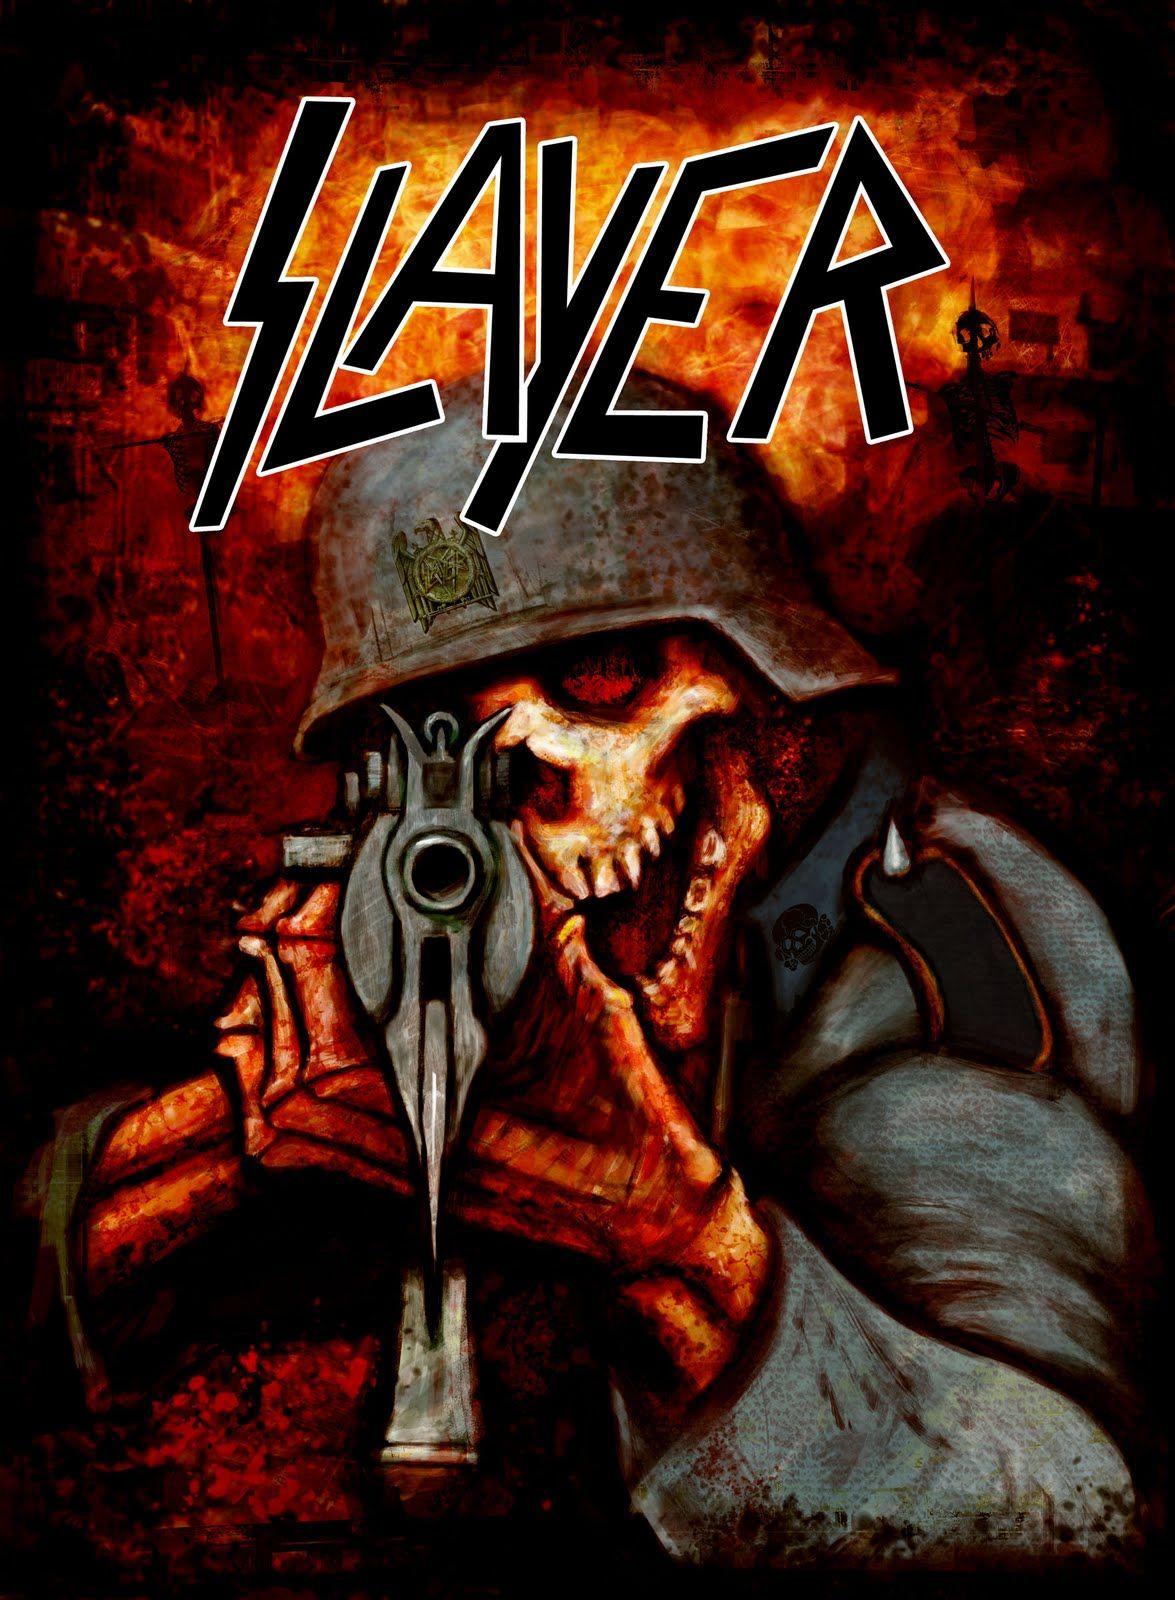 iPhone Heavy Metal Bands Wallpaper